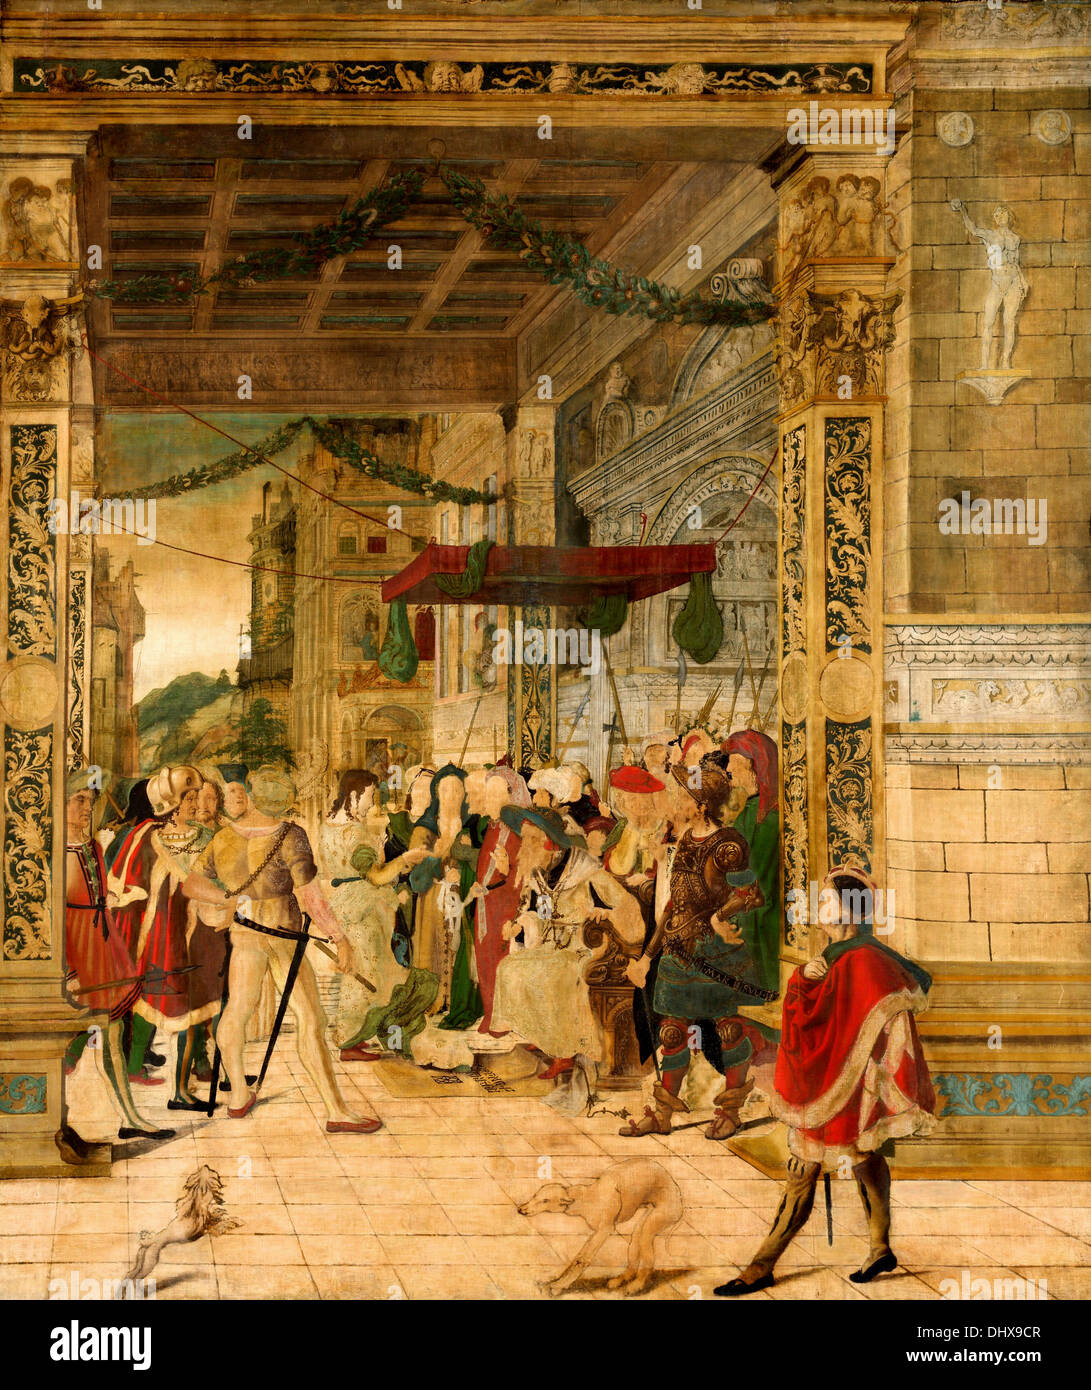 José interpretando los sueños del Faraón - por Jorg Breu el Joven, 1547 Foto de stock